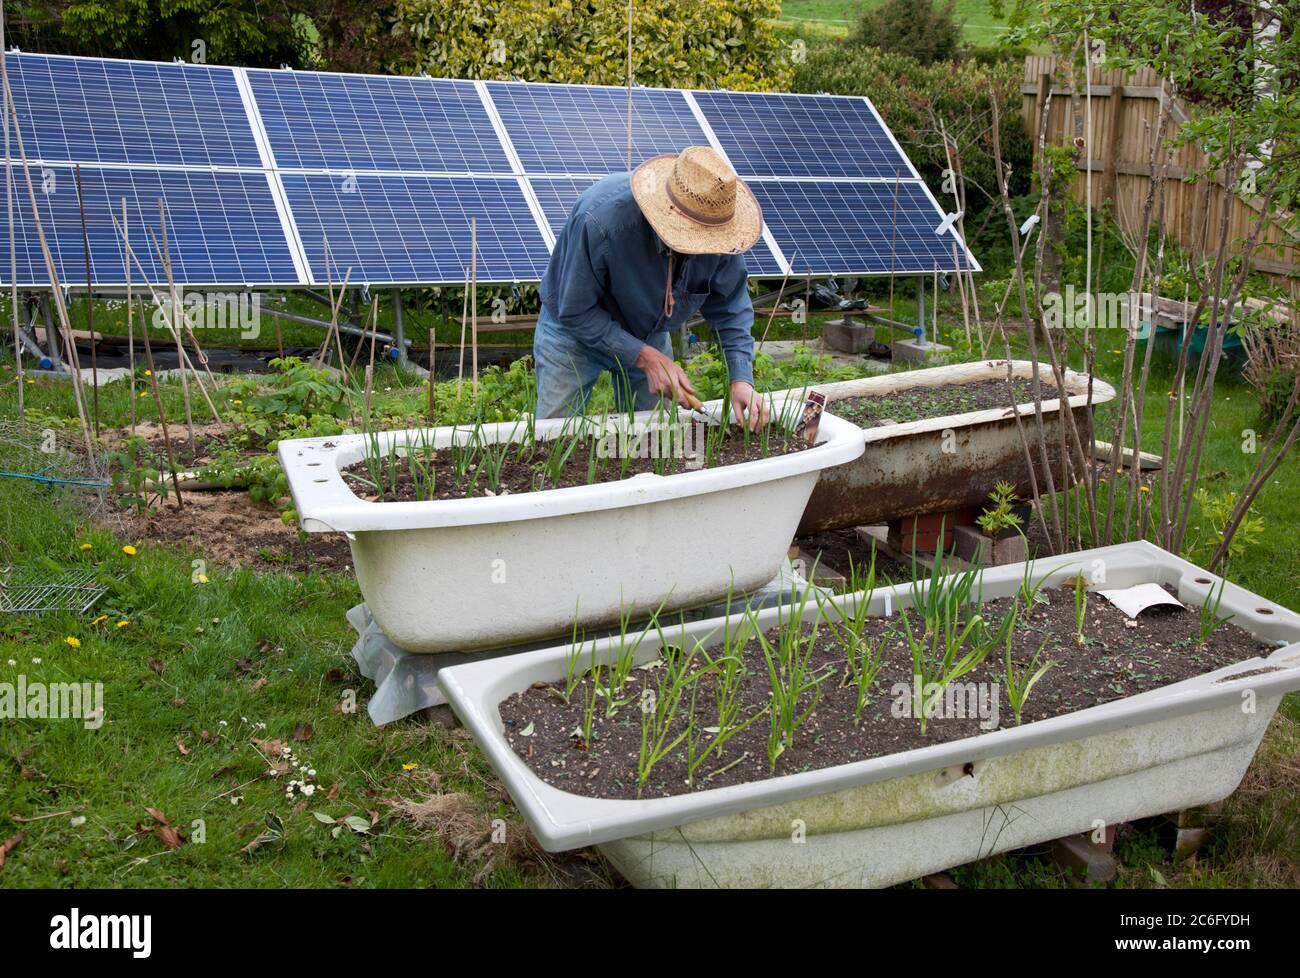 Giardiniere maschile senior tendente cipolle in un bagno sollevato all'aperto con un pannello solare gigante Foto Stock